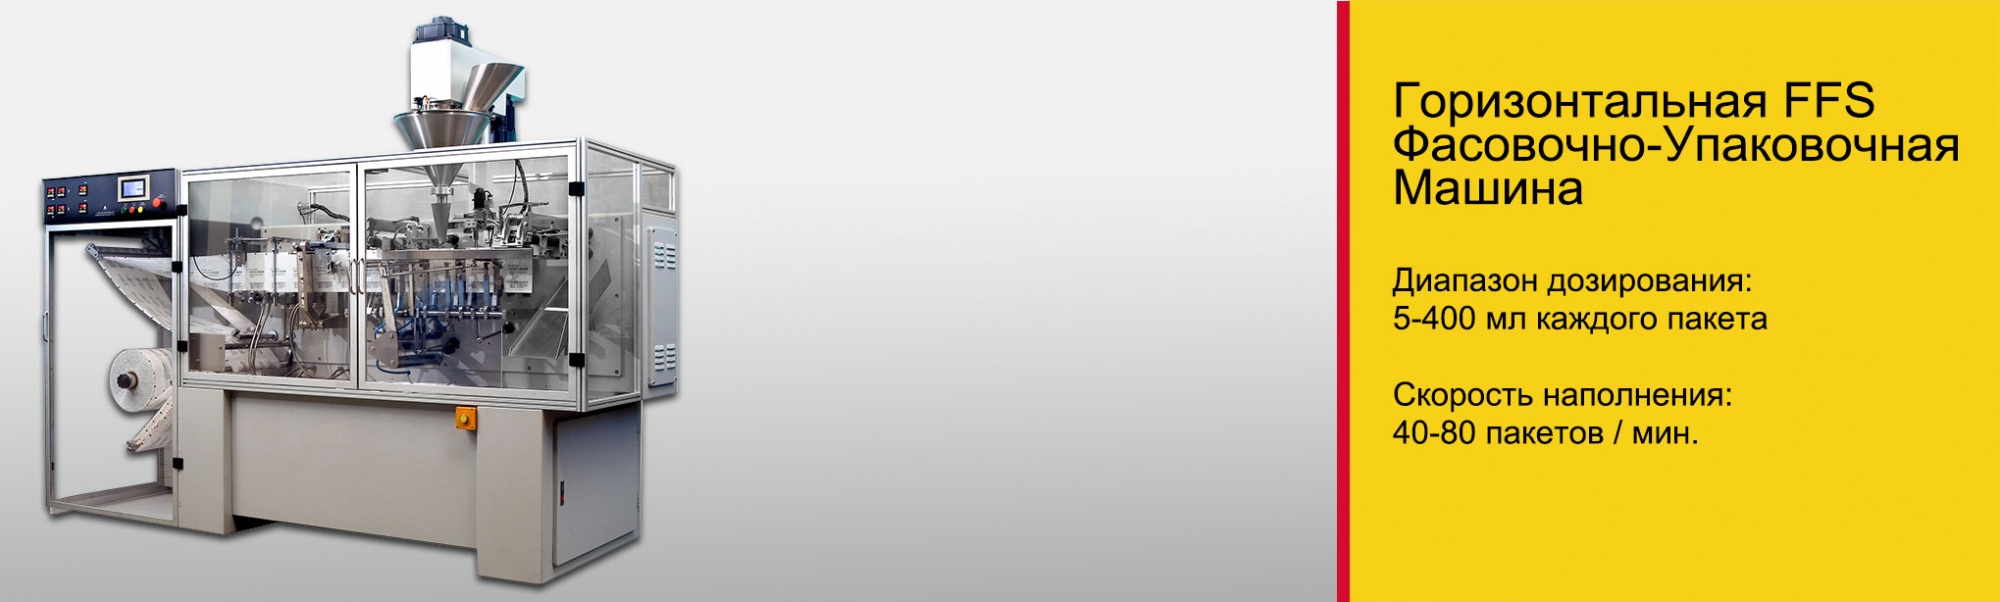 Фаcoвочный автoмат в саше – Горизонтальная FFS (Формирование; фасовка и запайка) Фасовочно-упаковочная машина.jpg